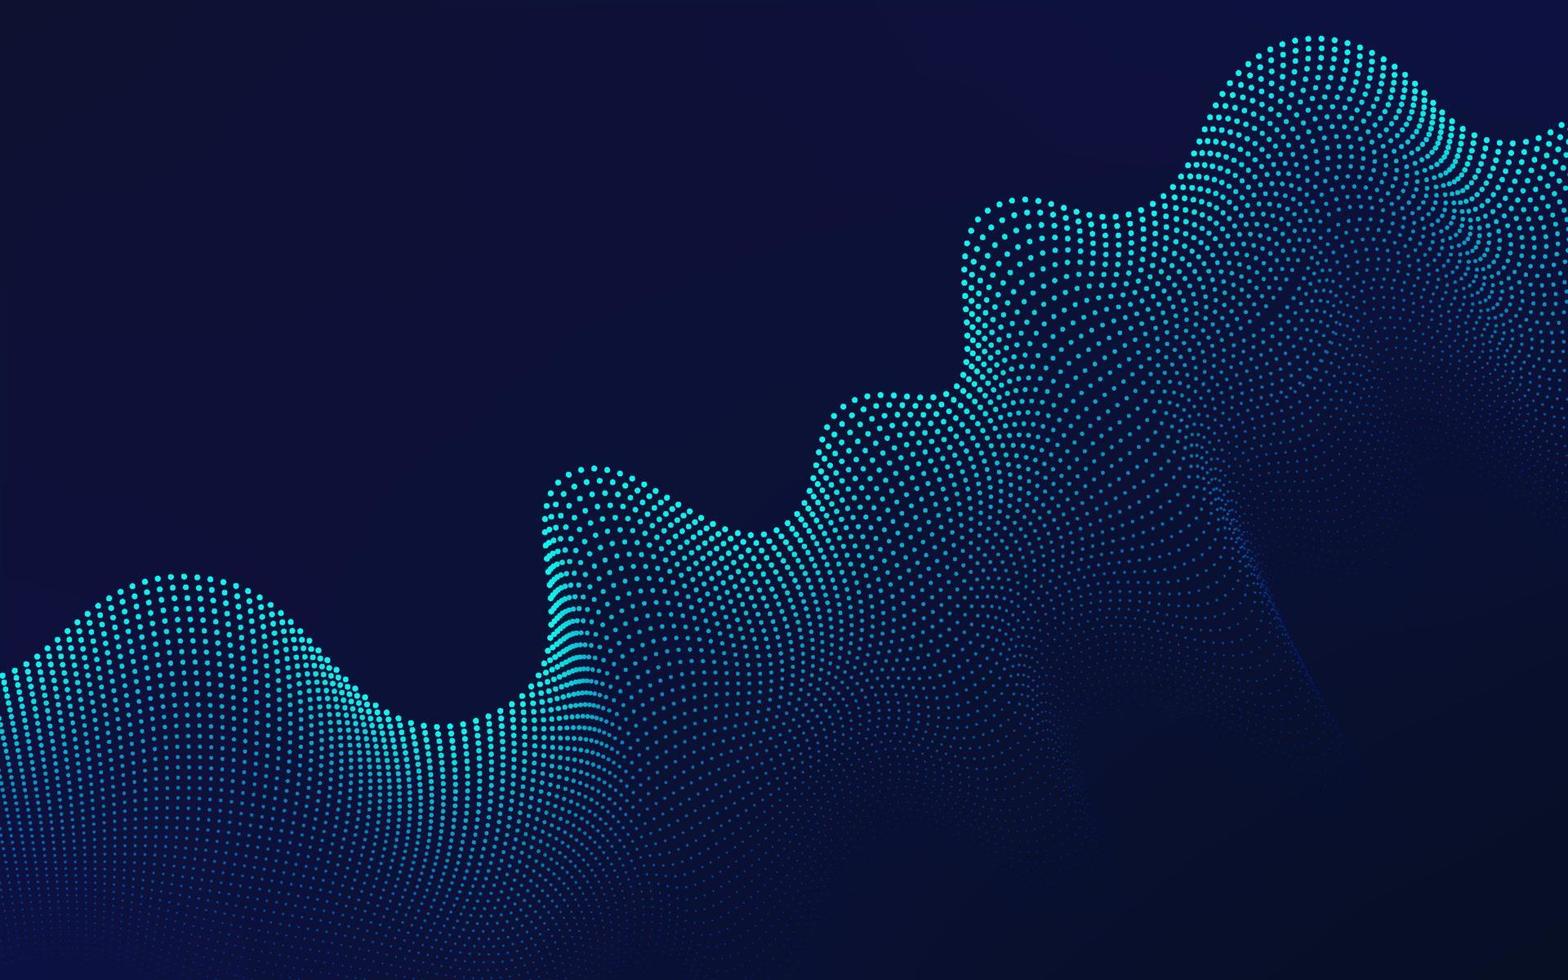 movimiento 3d abstracto de fondo dinámico de sonido. diseño de línea ondulada de partículas azules verdes de tecnología. concepto futurista moderno. ilustración vectorial vector